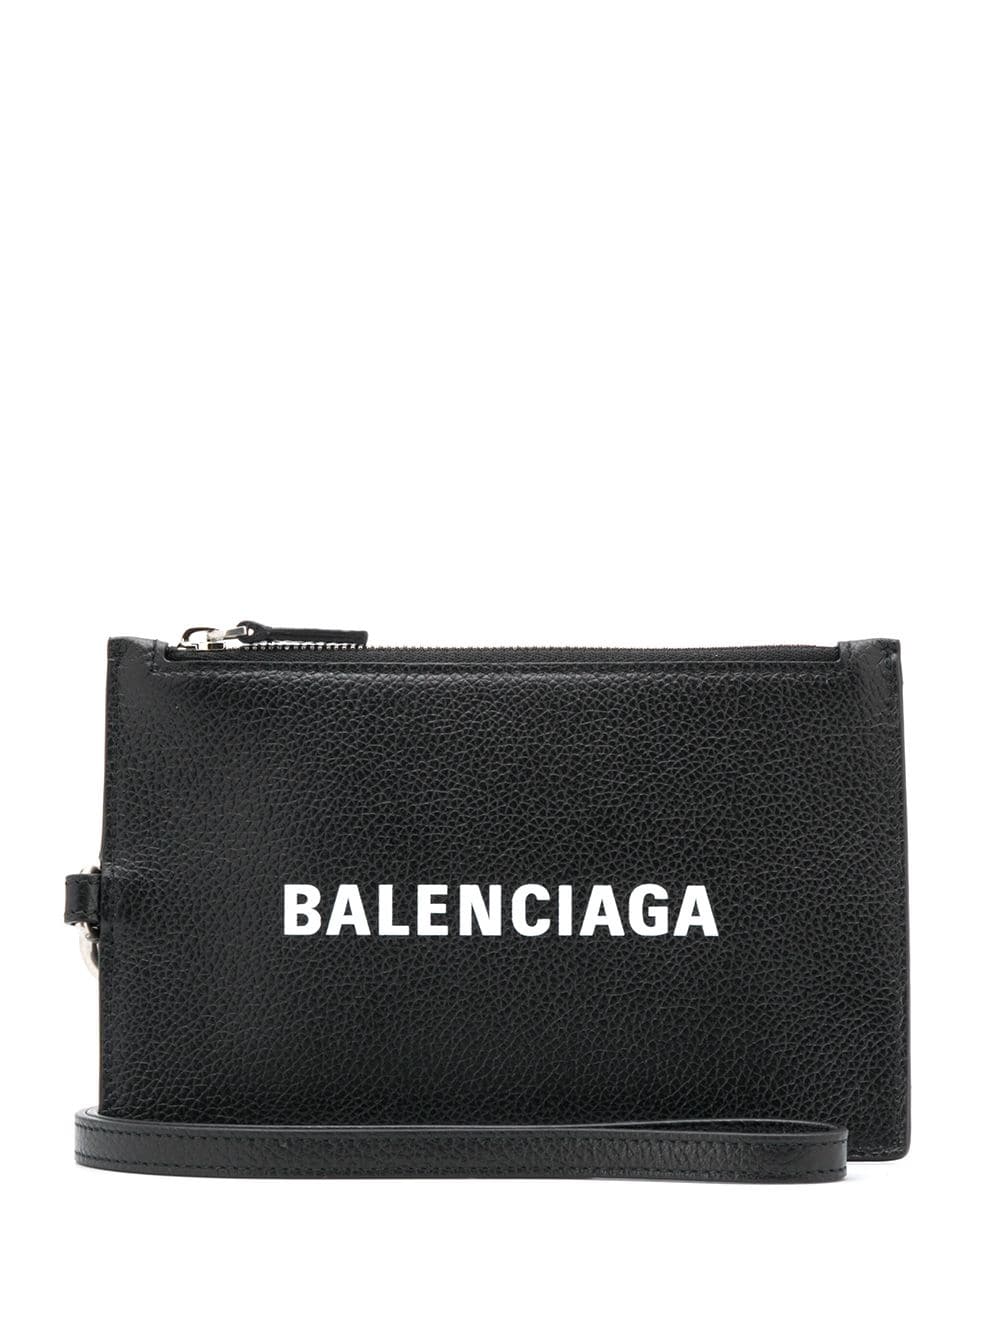 Balenciaga logo zip wallet - Black von Balenciaga